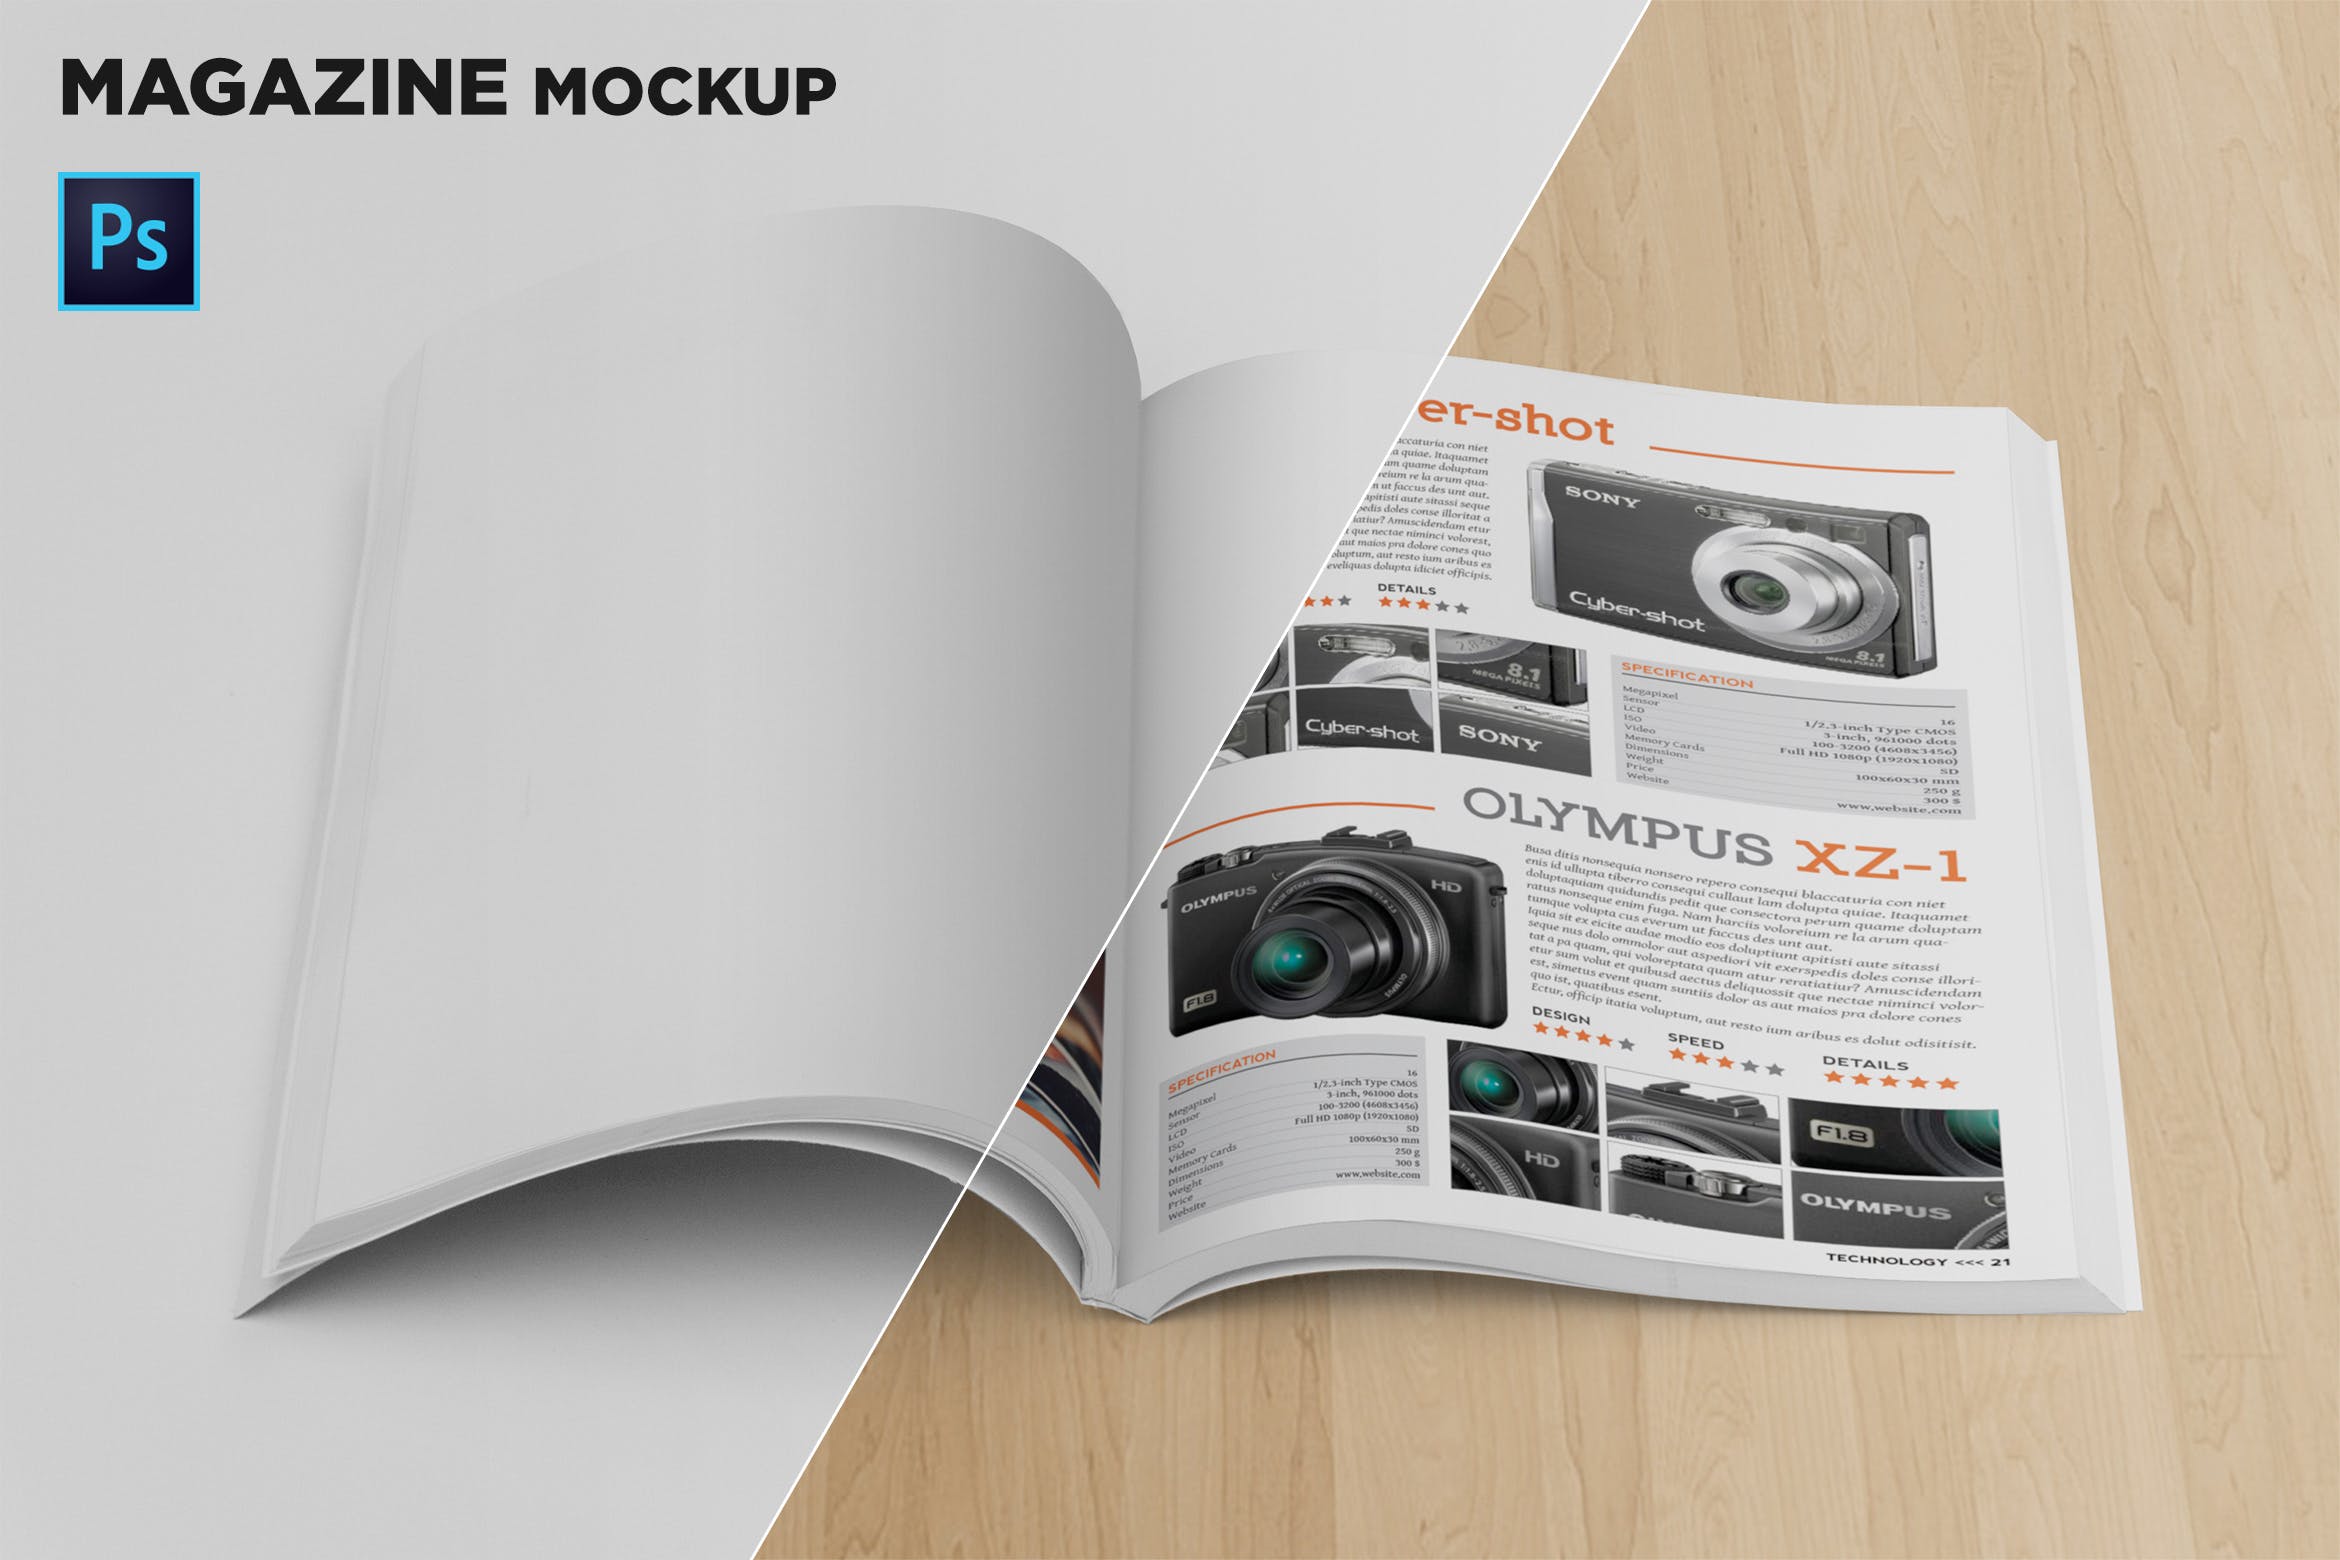 杂志内页排版设计前视图样机素材库精选 Magazine Mockup Front View插图